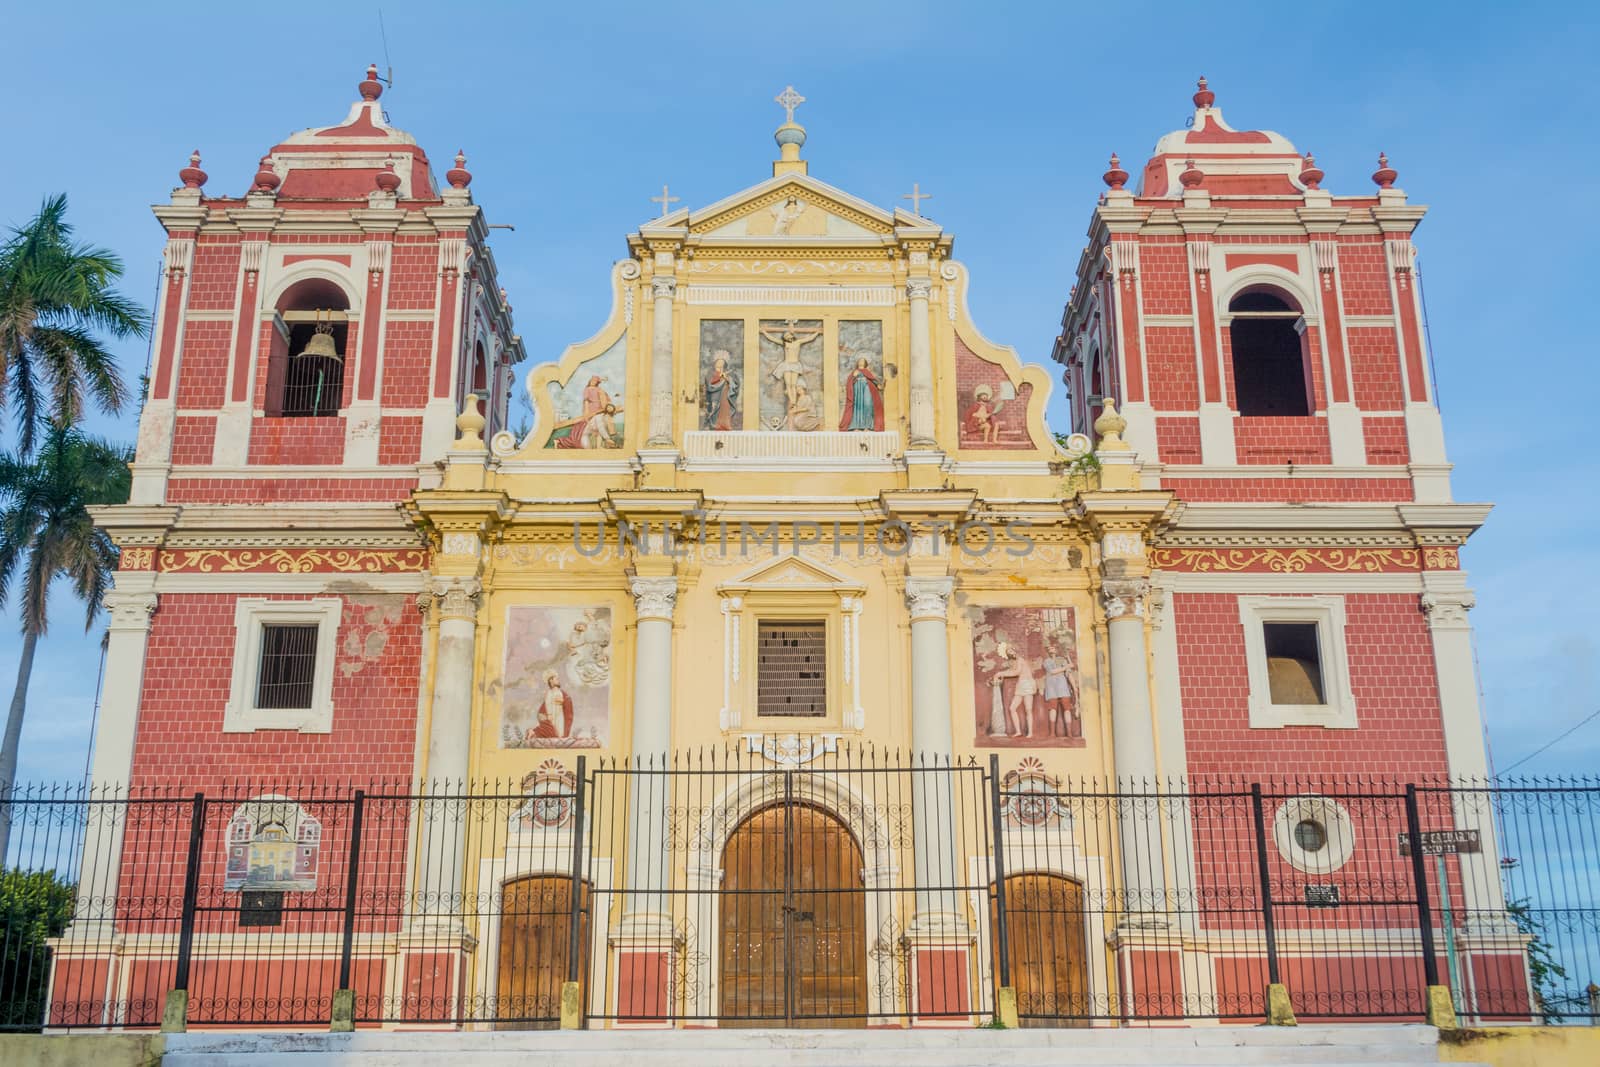 Leon, Nicaragua: The baroque El Calvario Church facade, located in Leon, Nicaragua by kb79